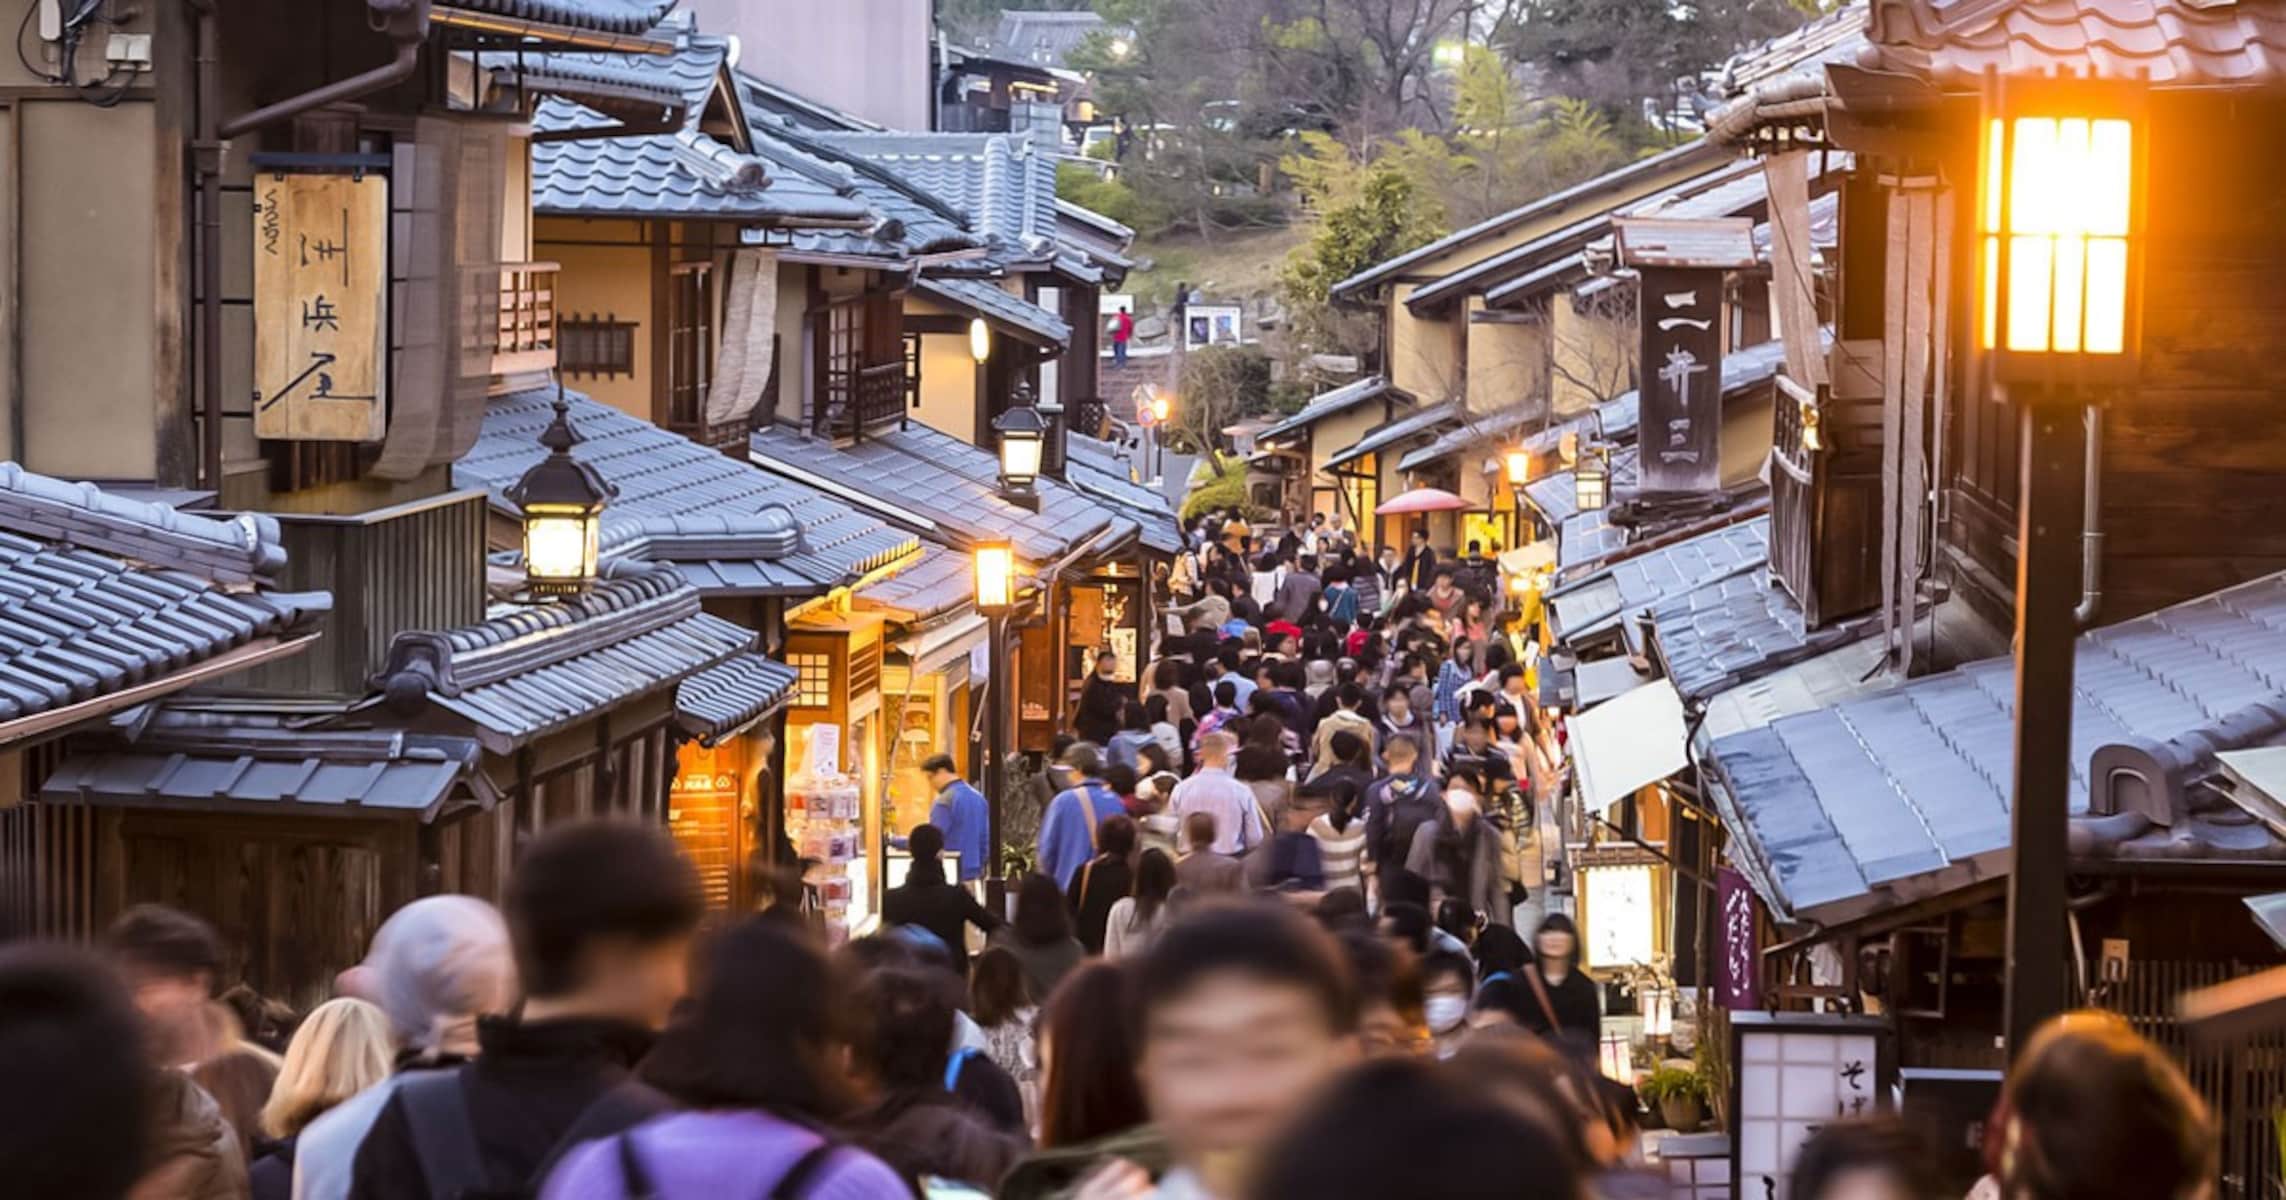 外国人だらけの京都にうんざり? 「混んでるから」とあきらめず京都観光を楽しむ裏ワザ